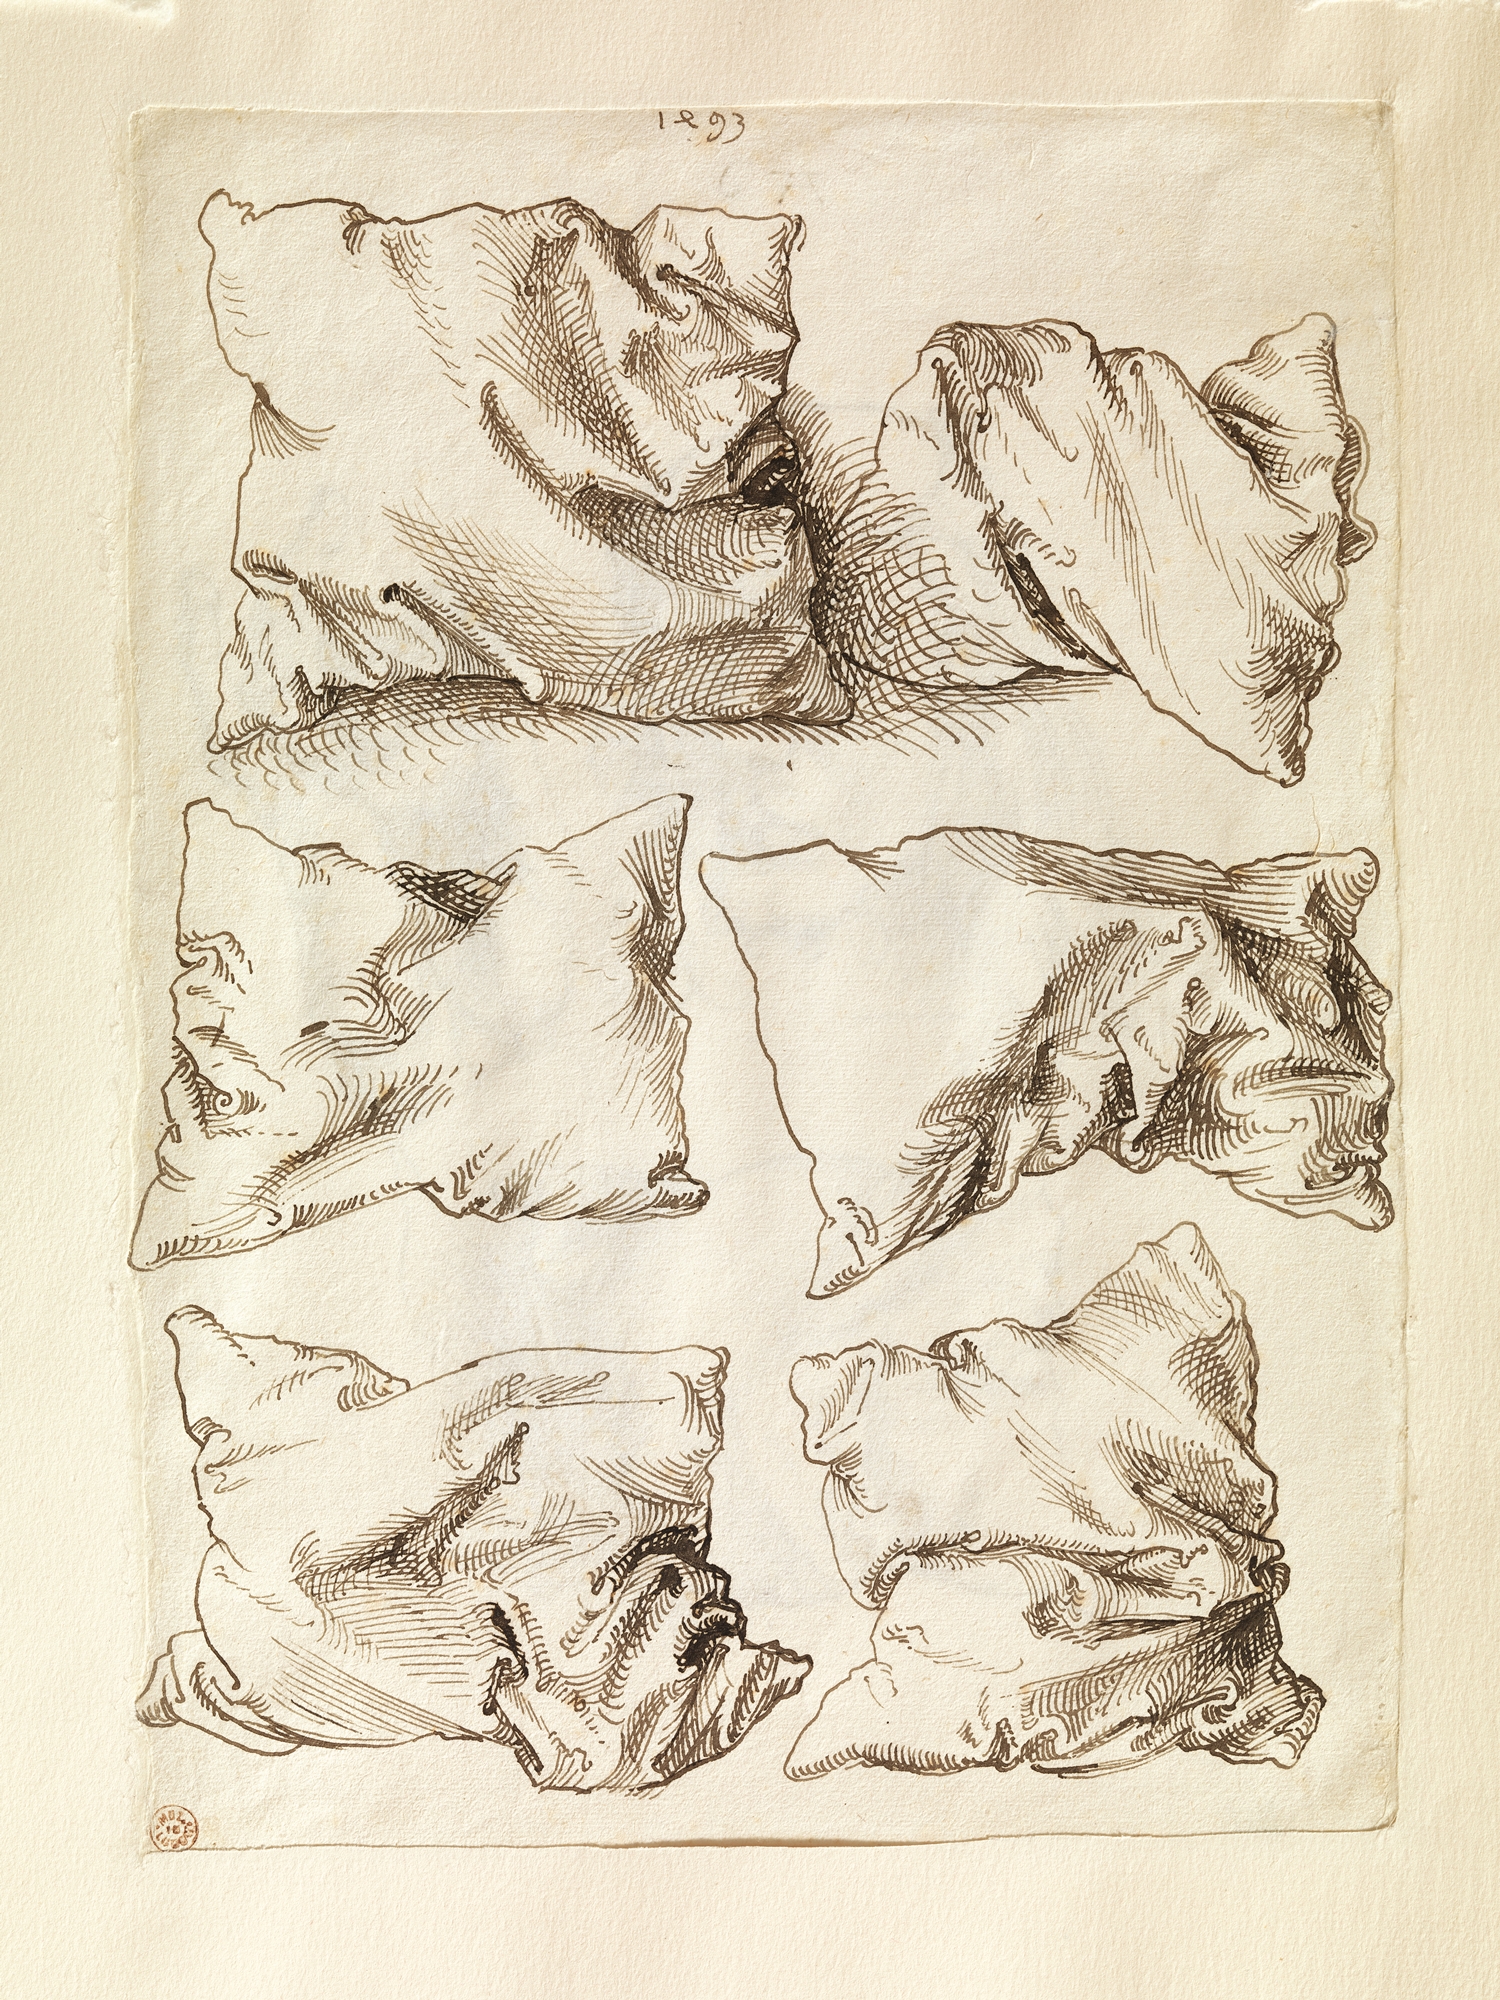 枕頭的習作 by Albrecht Dürer - 1493 - 27.8 x 20.2 釐米 